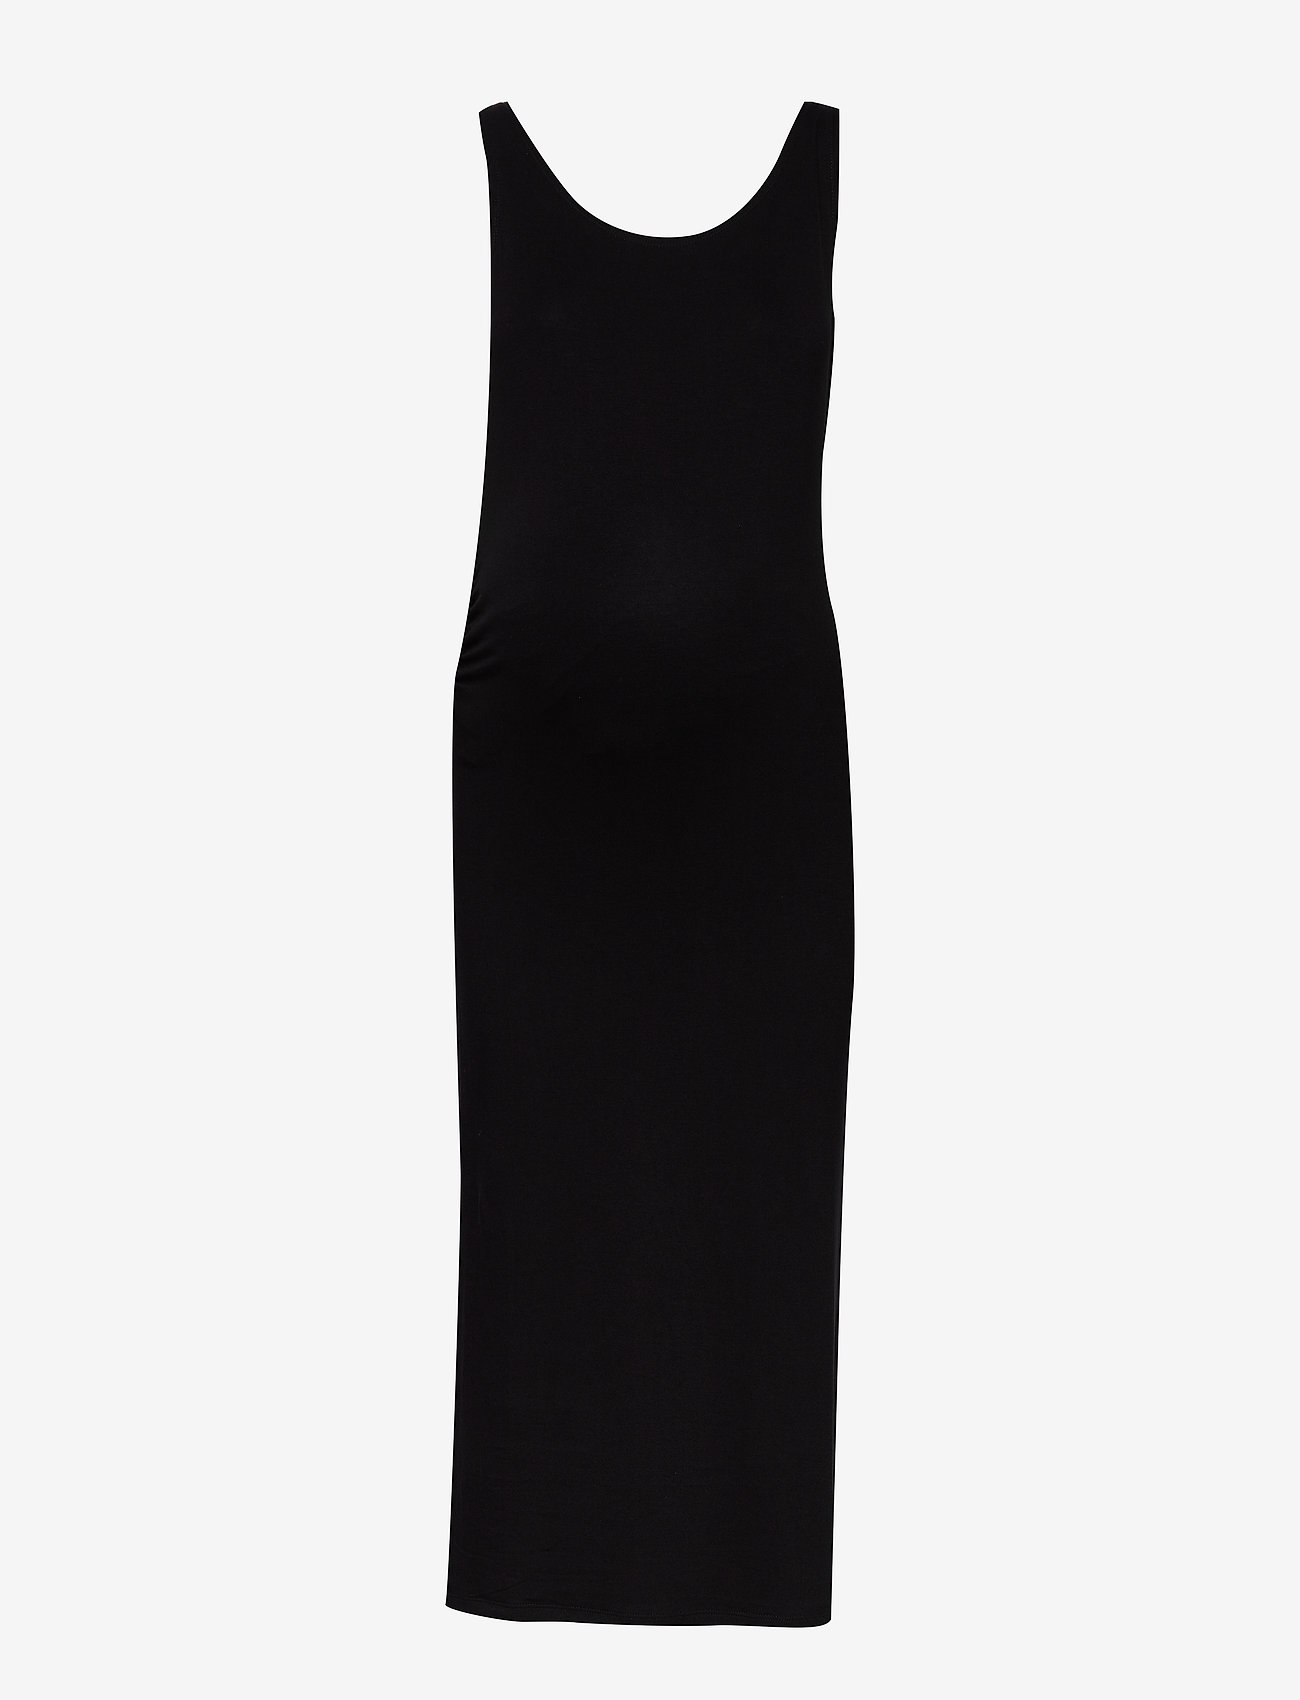 Lindex - Dress MOM Joanne - etuikleider - black - 0